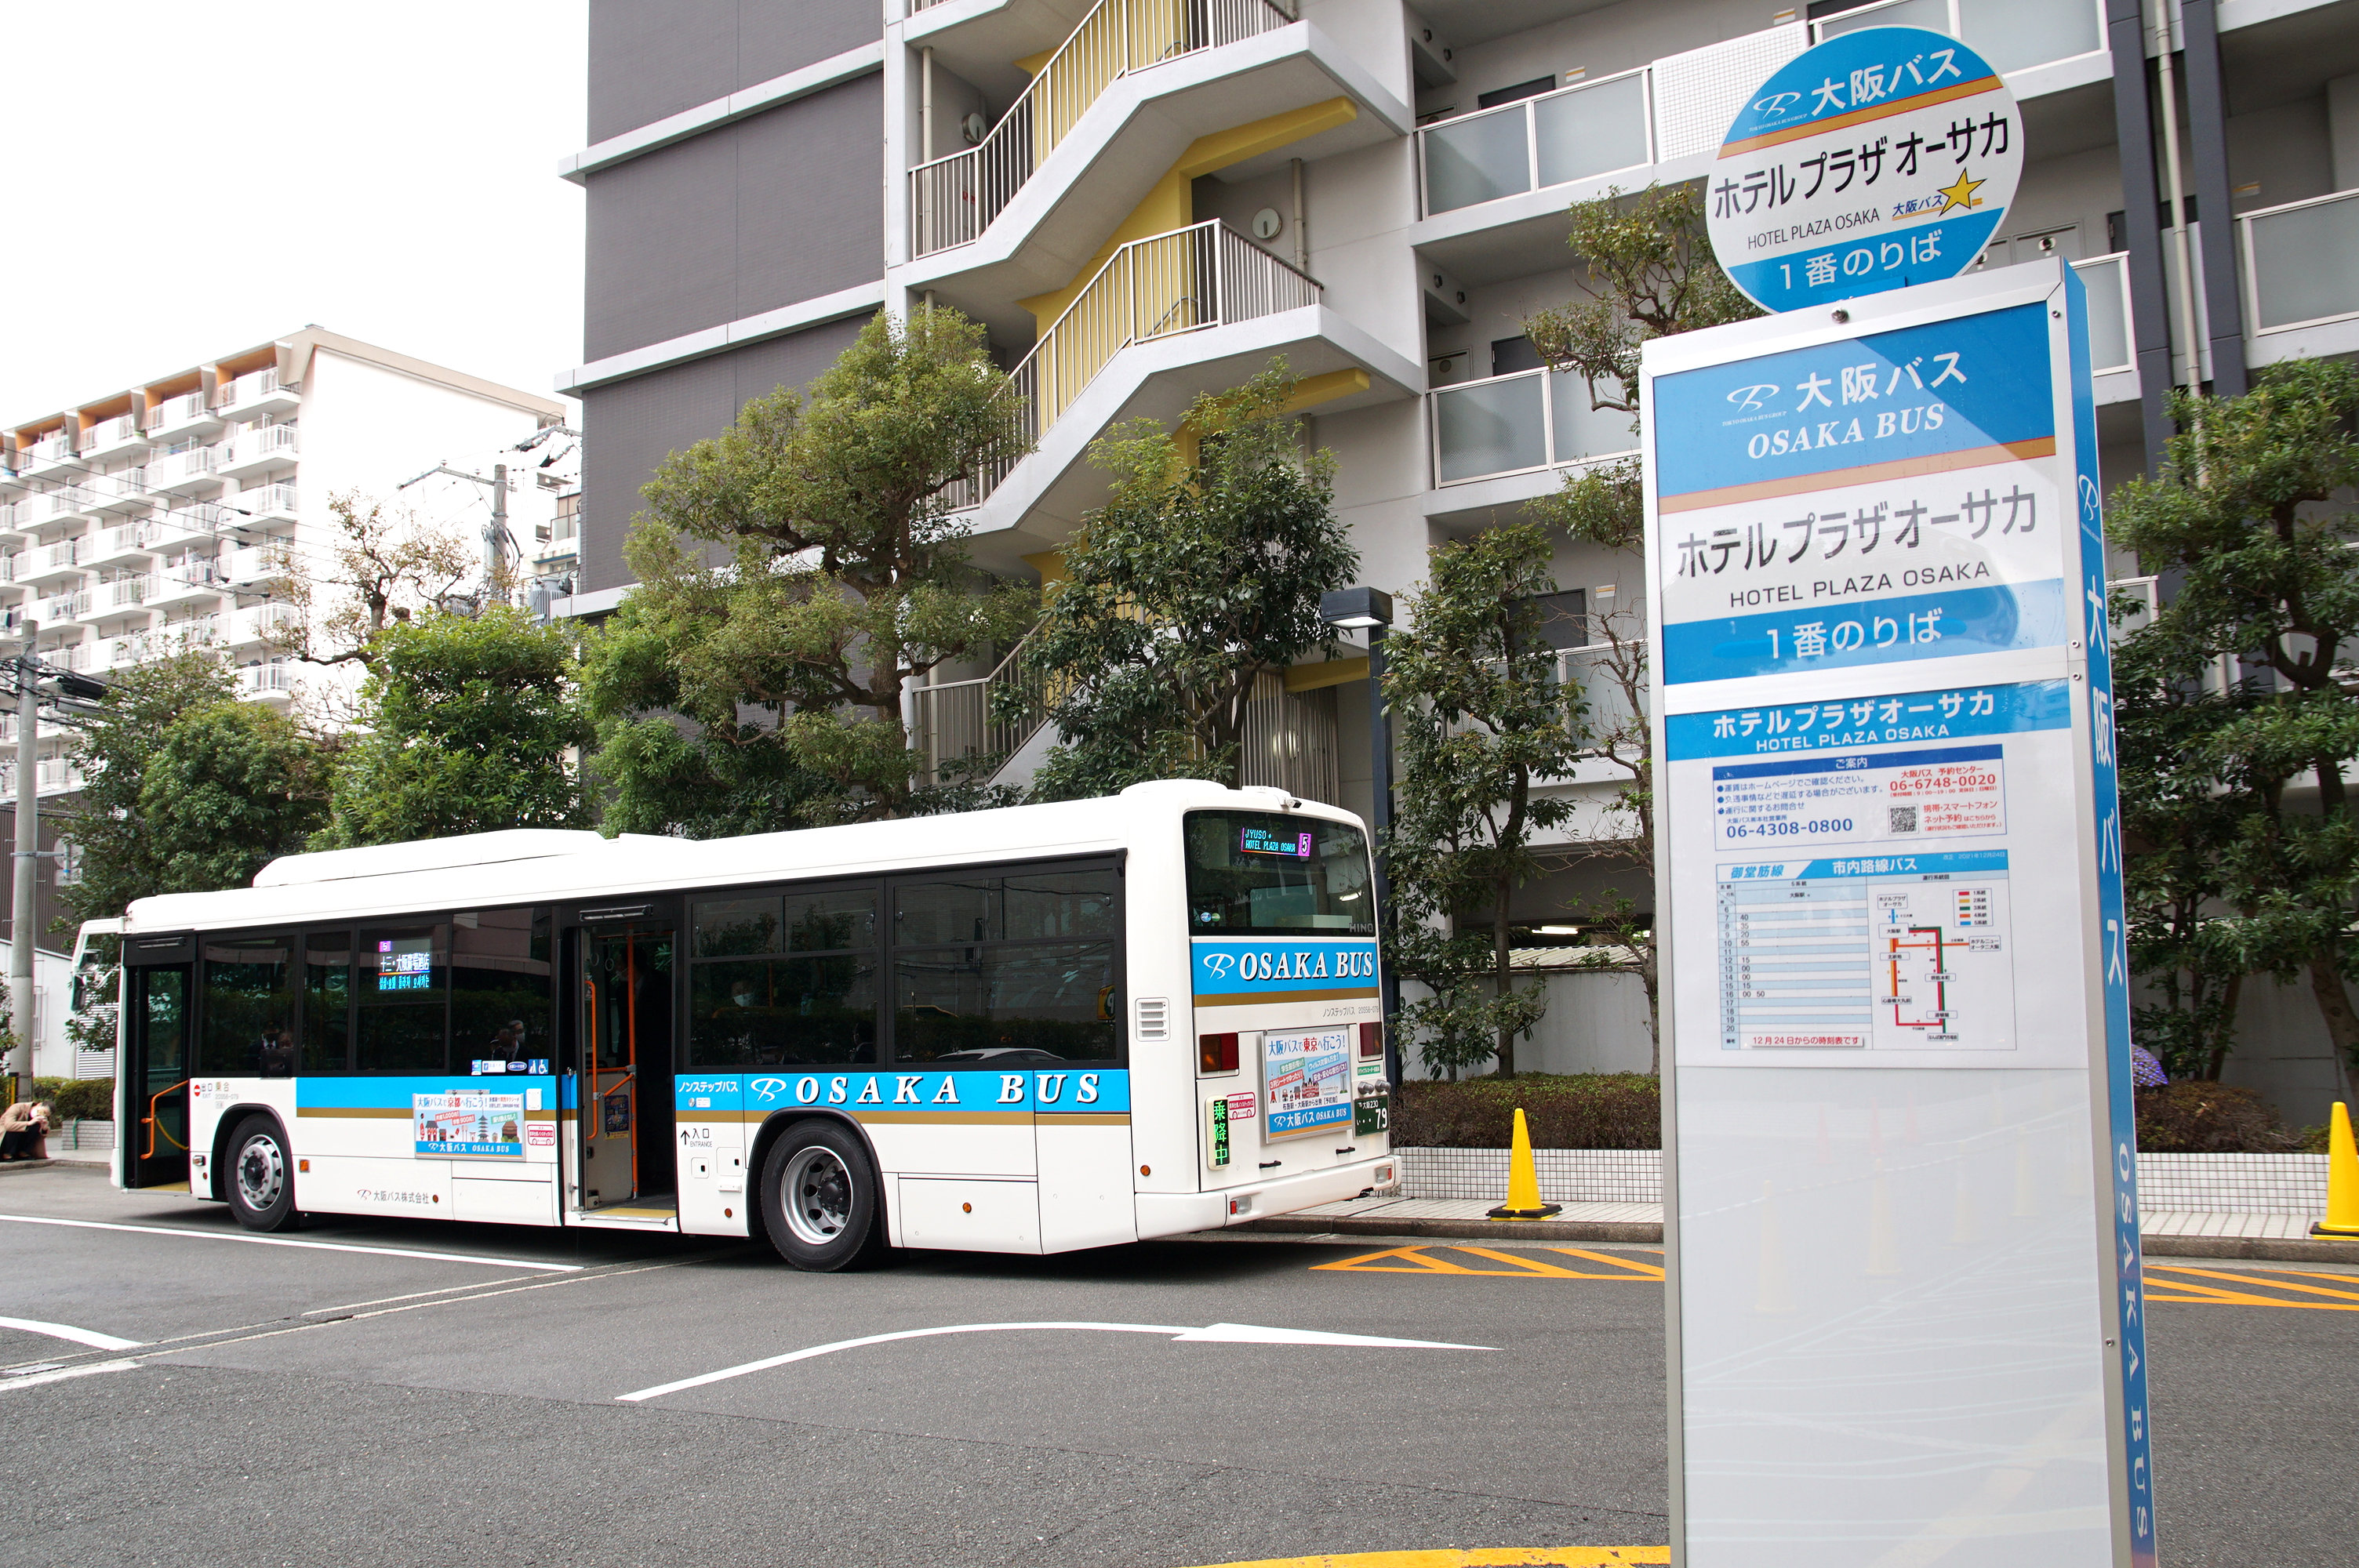 プラザオーサカバス停と大阪バス